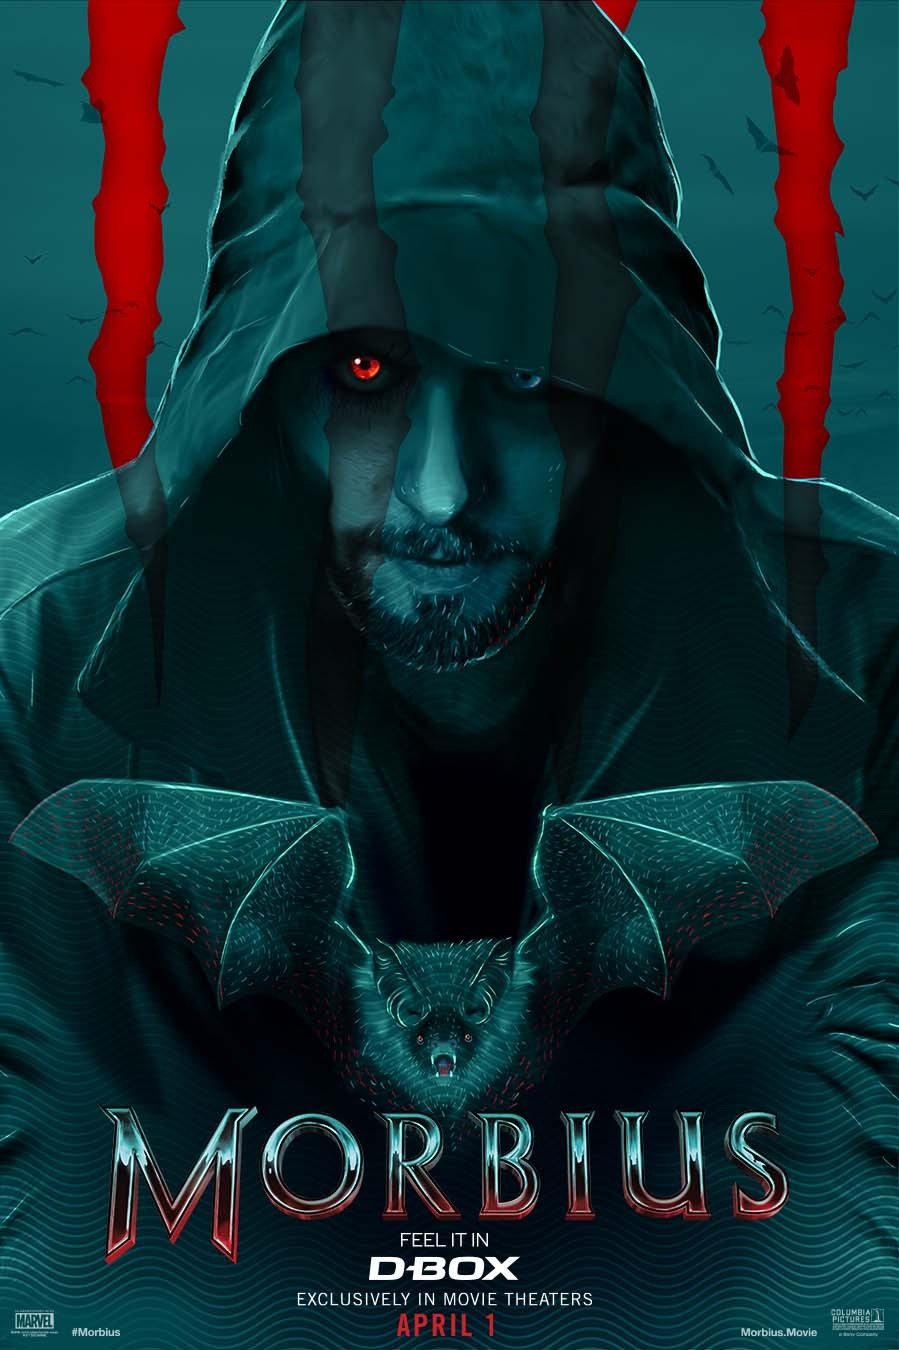 Les affiches du film Marvel Morbius